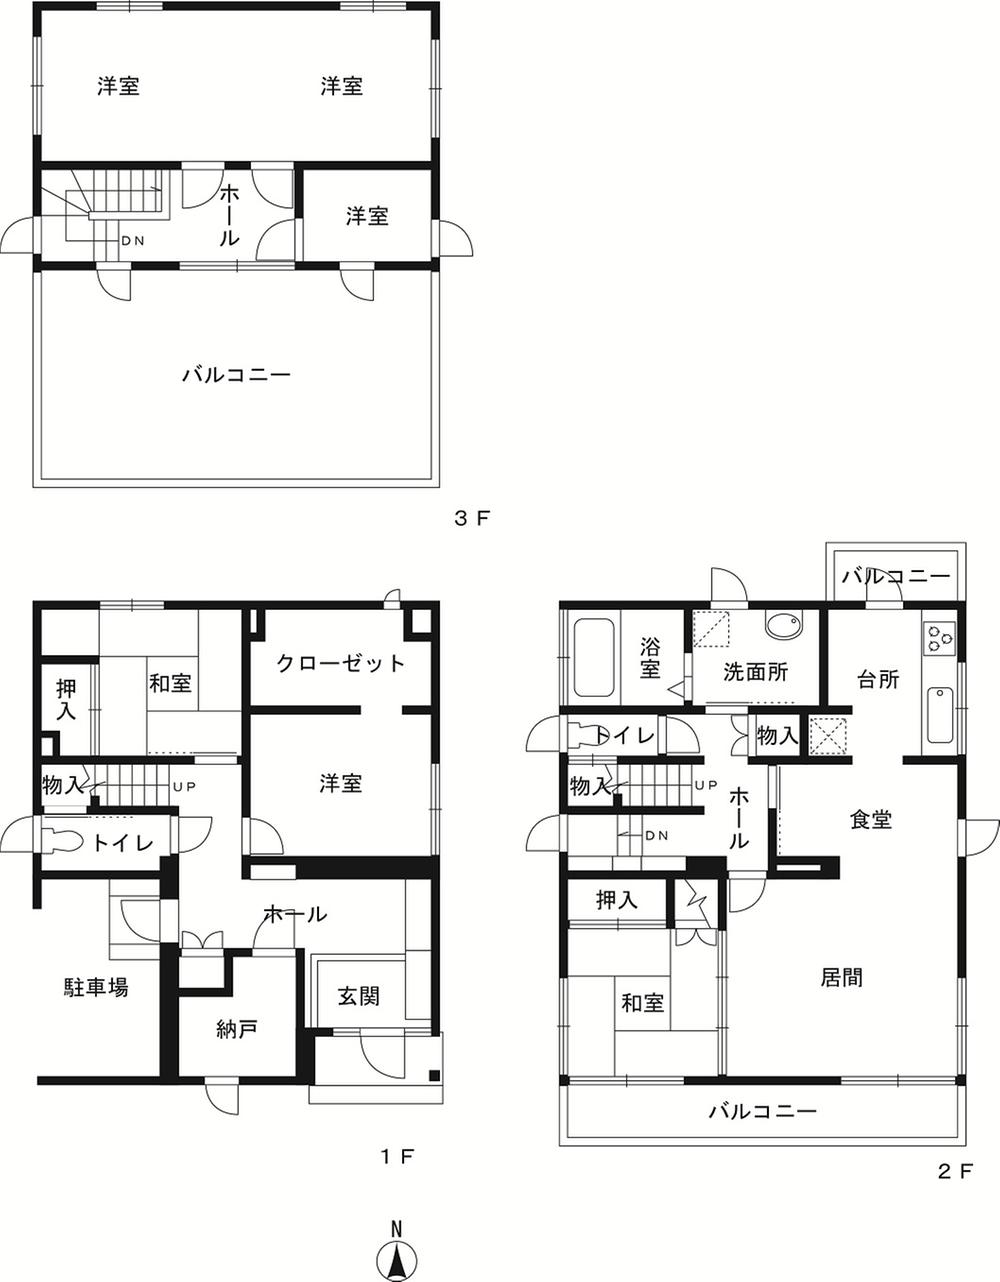 Floor plan. 33,600,000 yen, 5LDK + S (storeroom), Land area 306.75 sq m , Building area 150.04 sq m